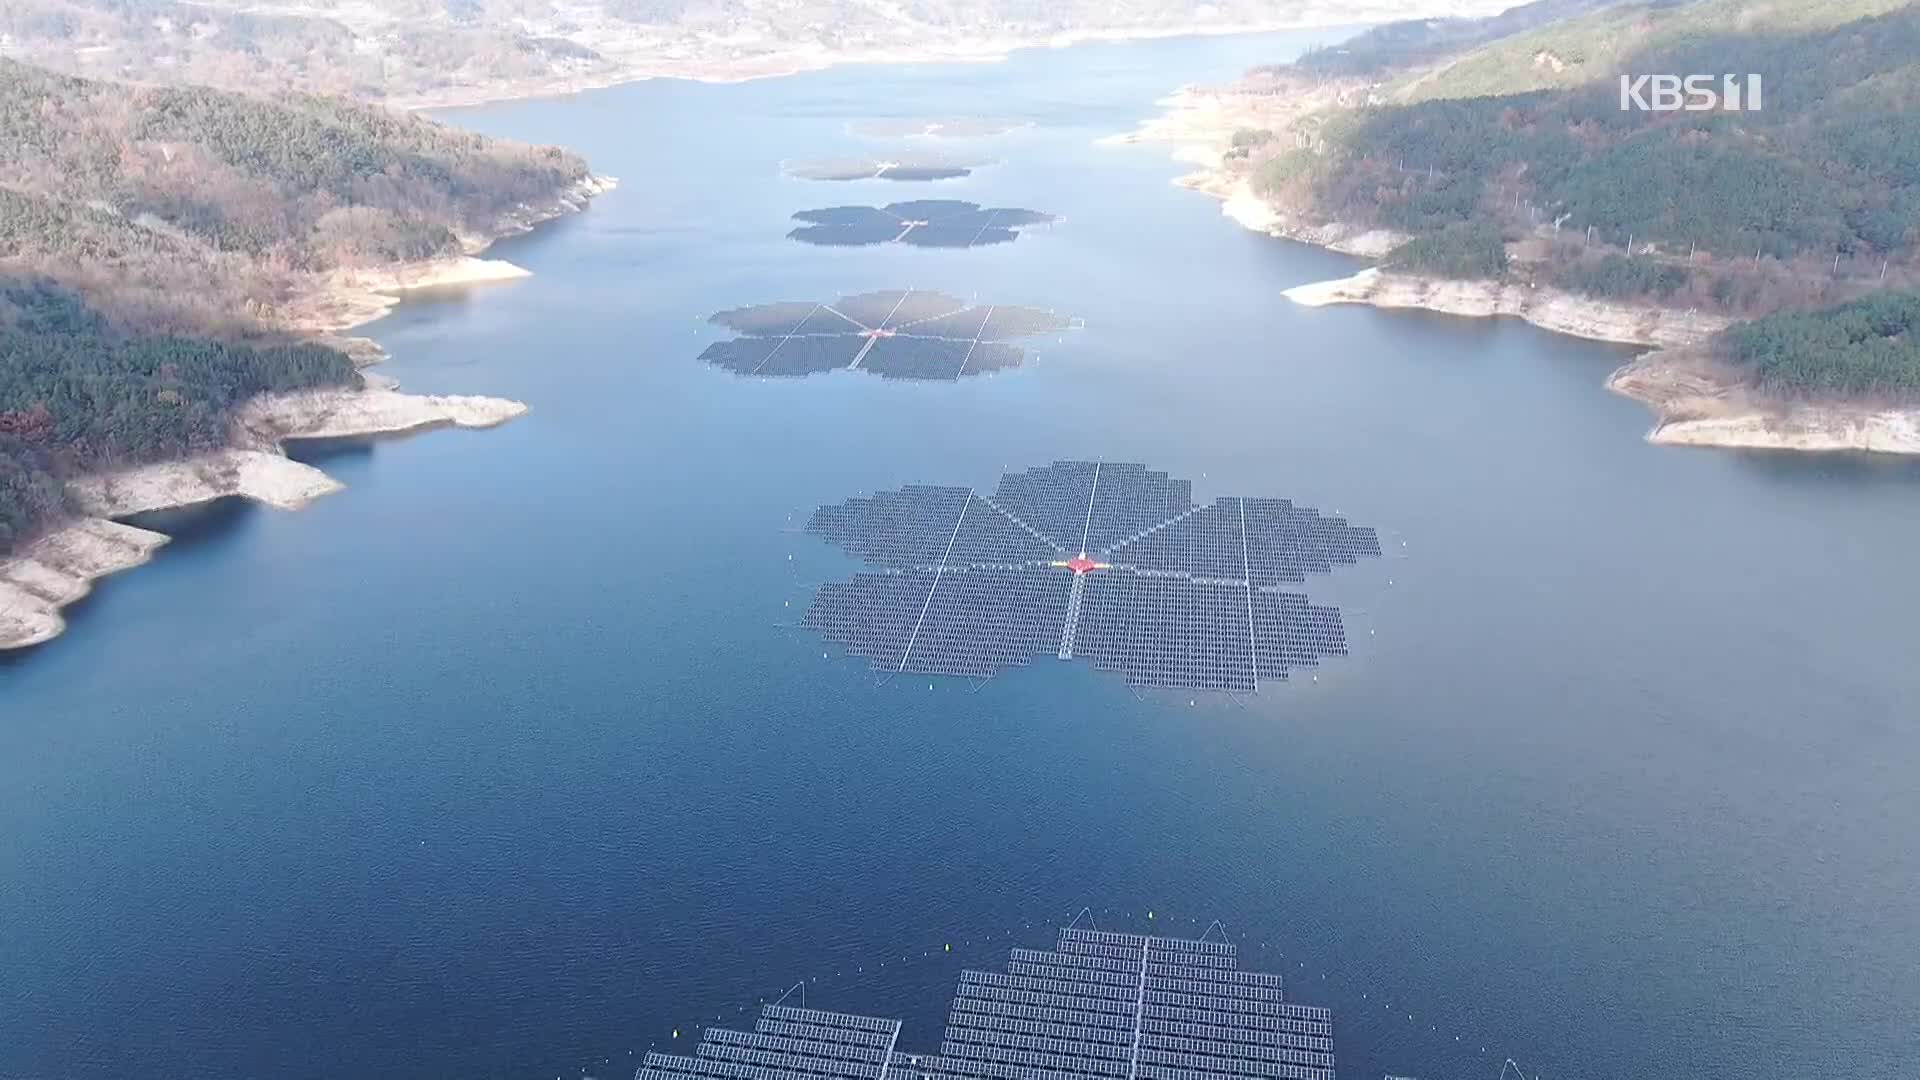 paneles solares flotantes